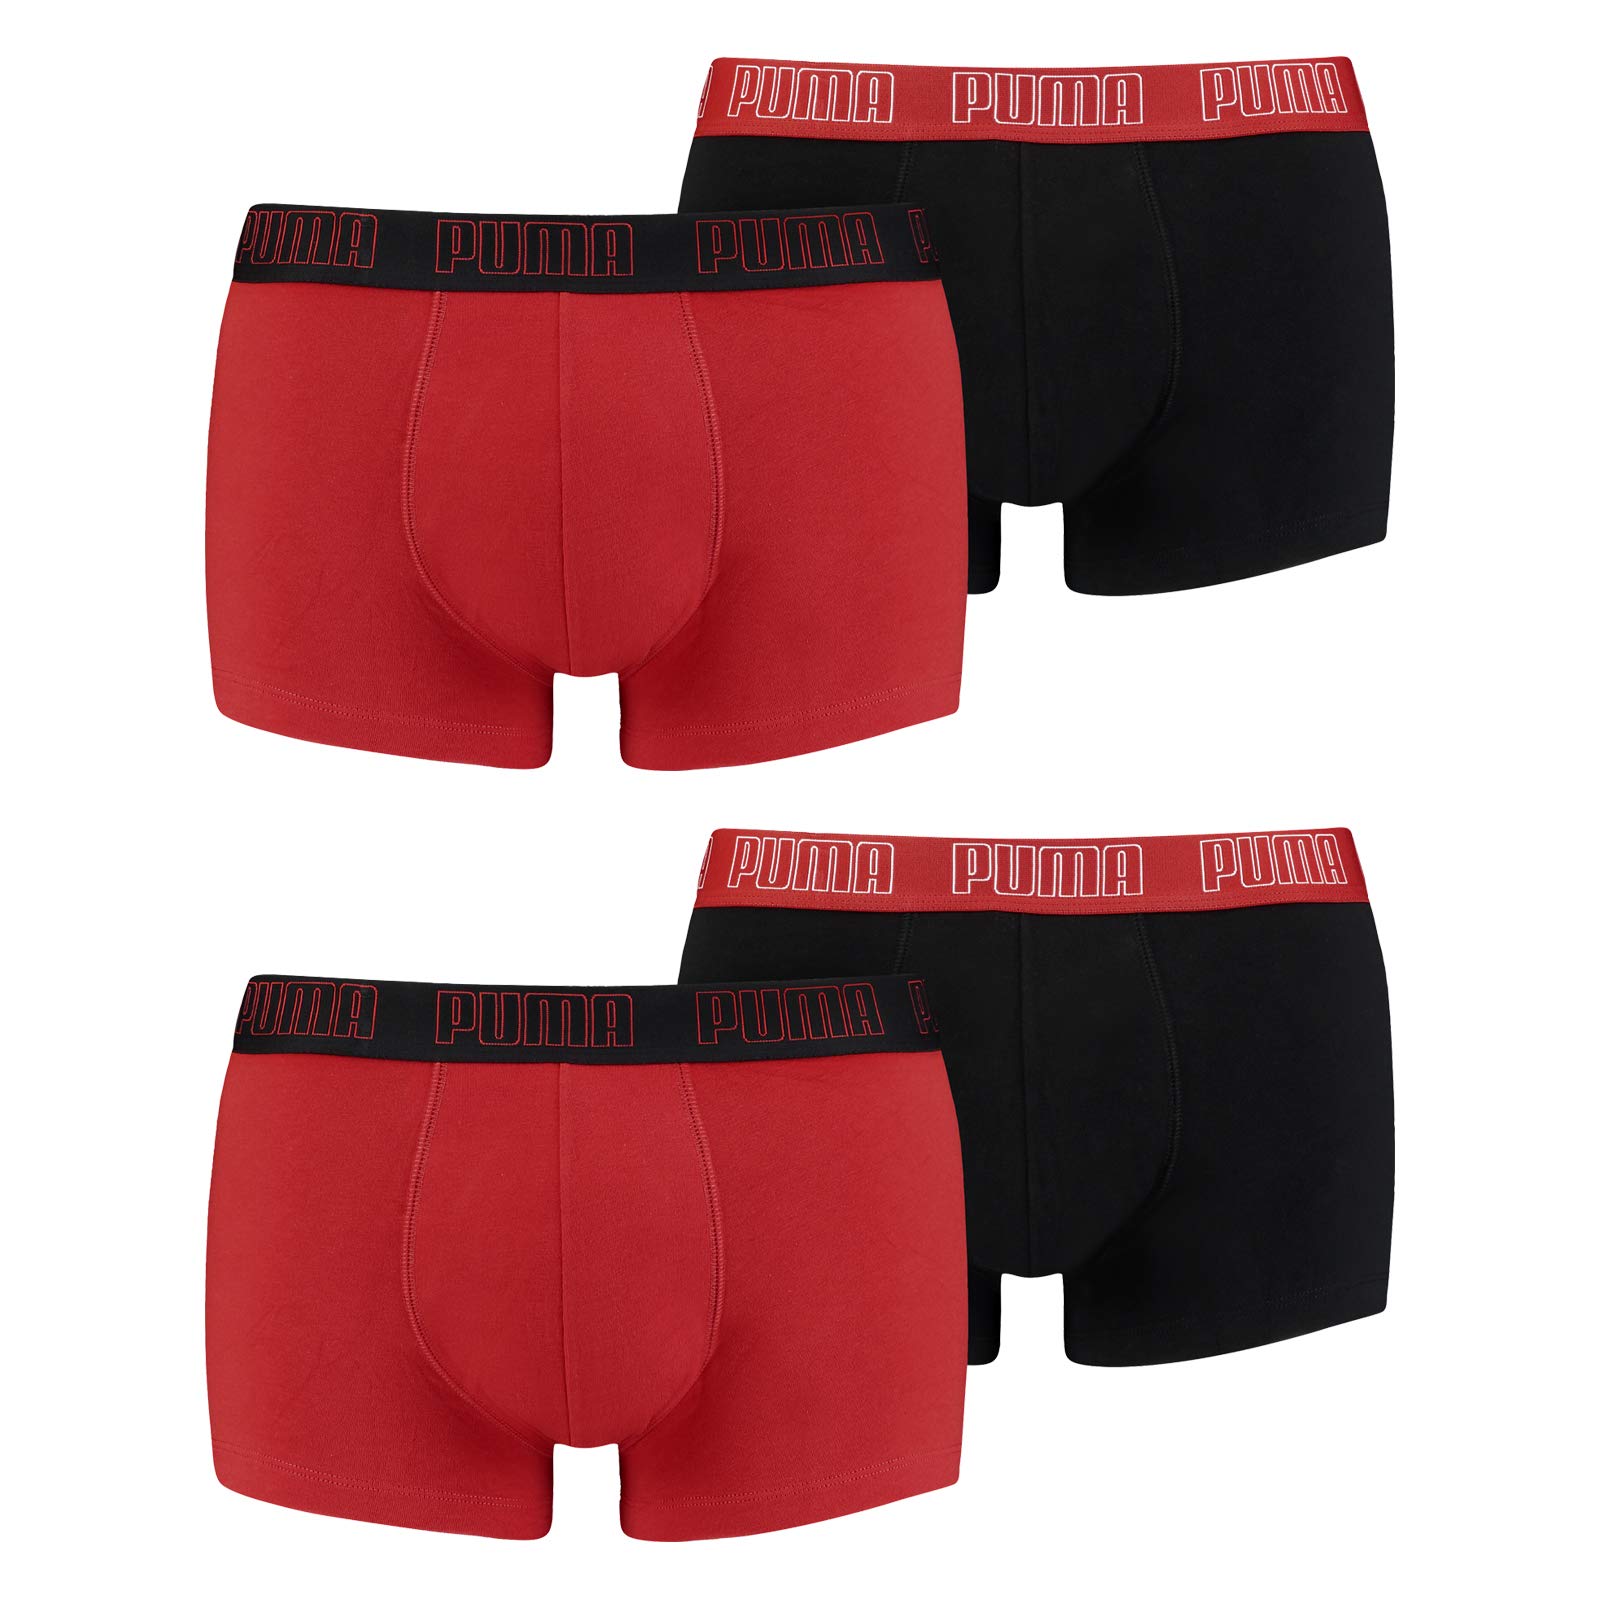 PUMA Herren Shortboxer Unterhosen Trunks 4er Pack, Wäschegröße:M, Artikel:-002 red/Black